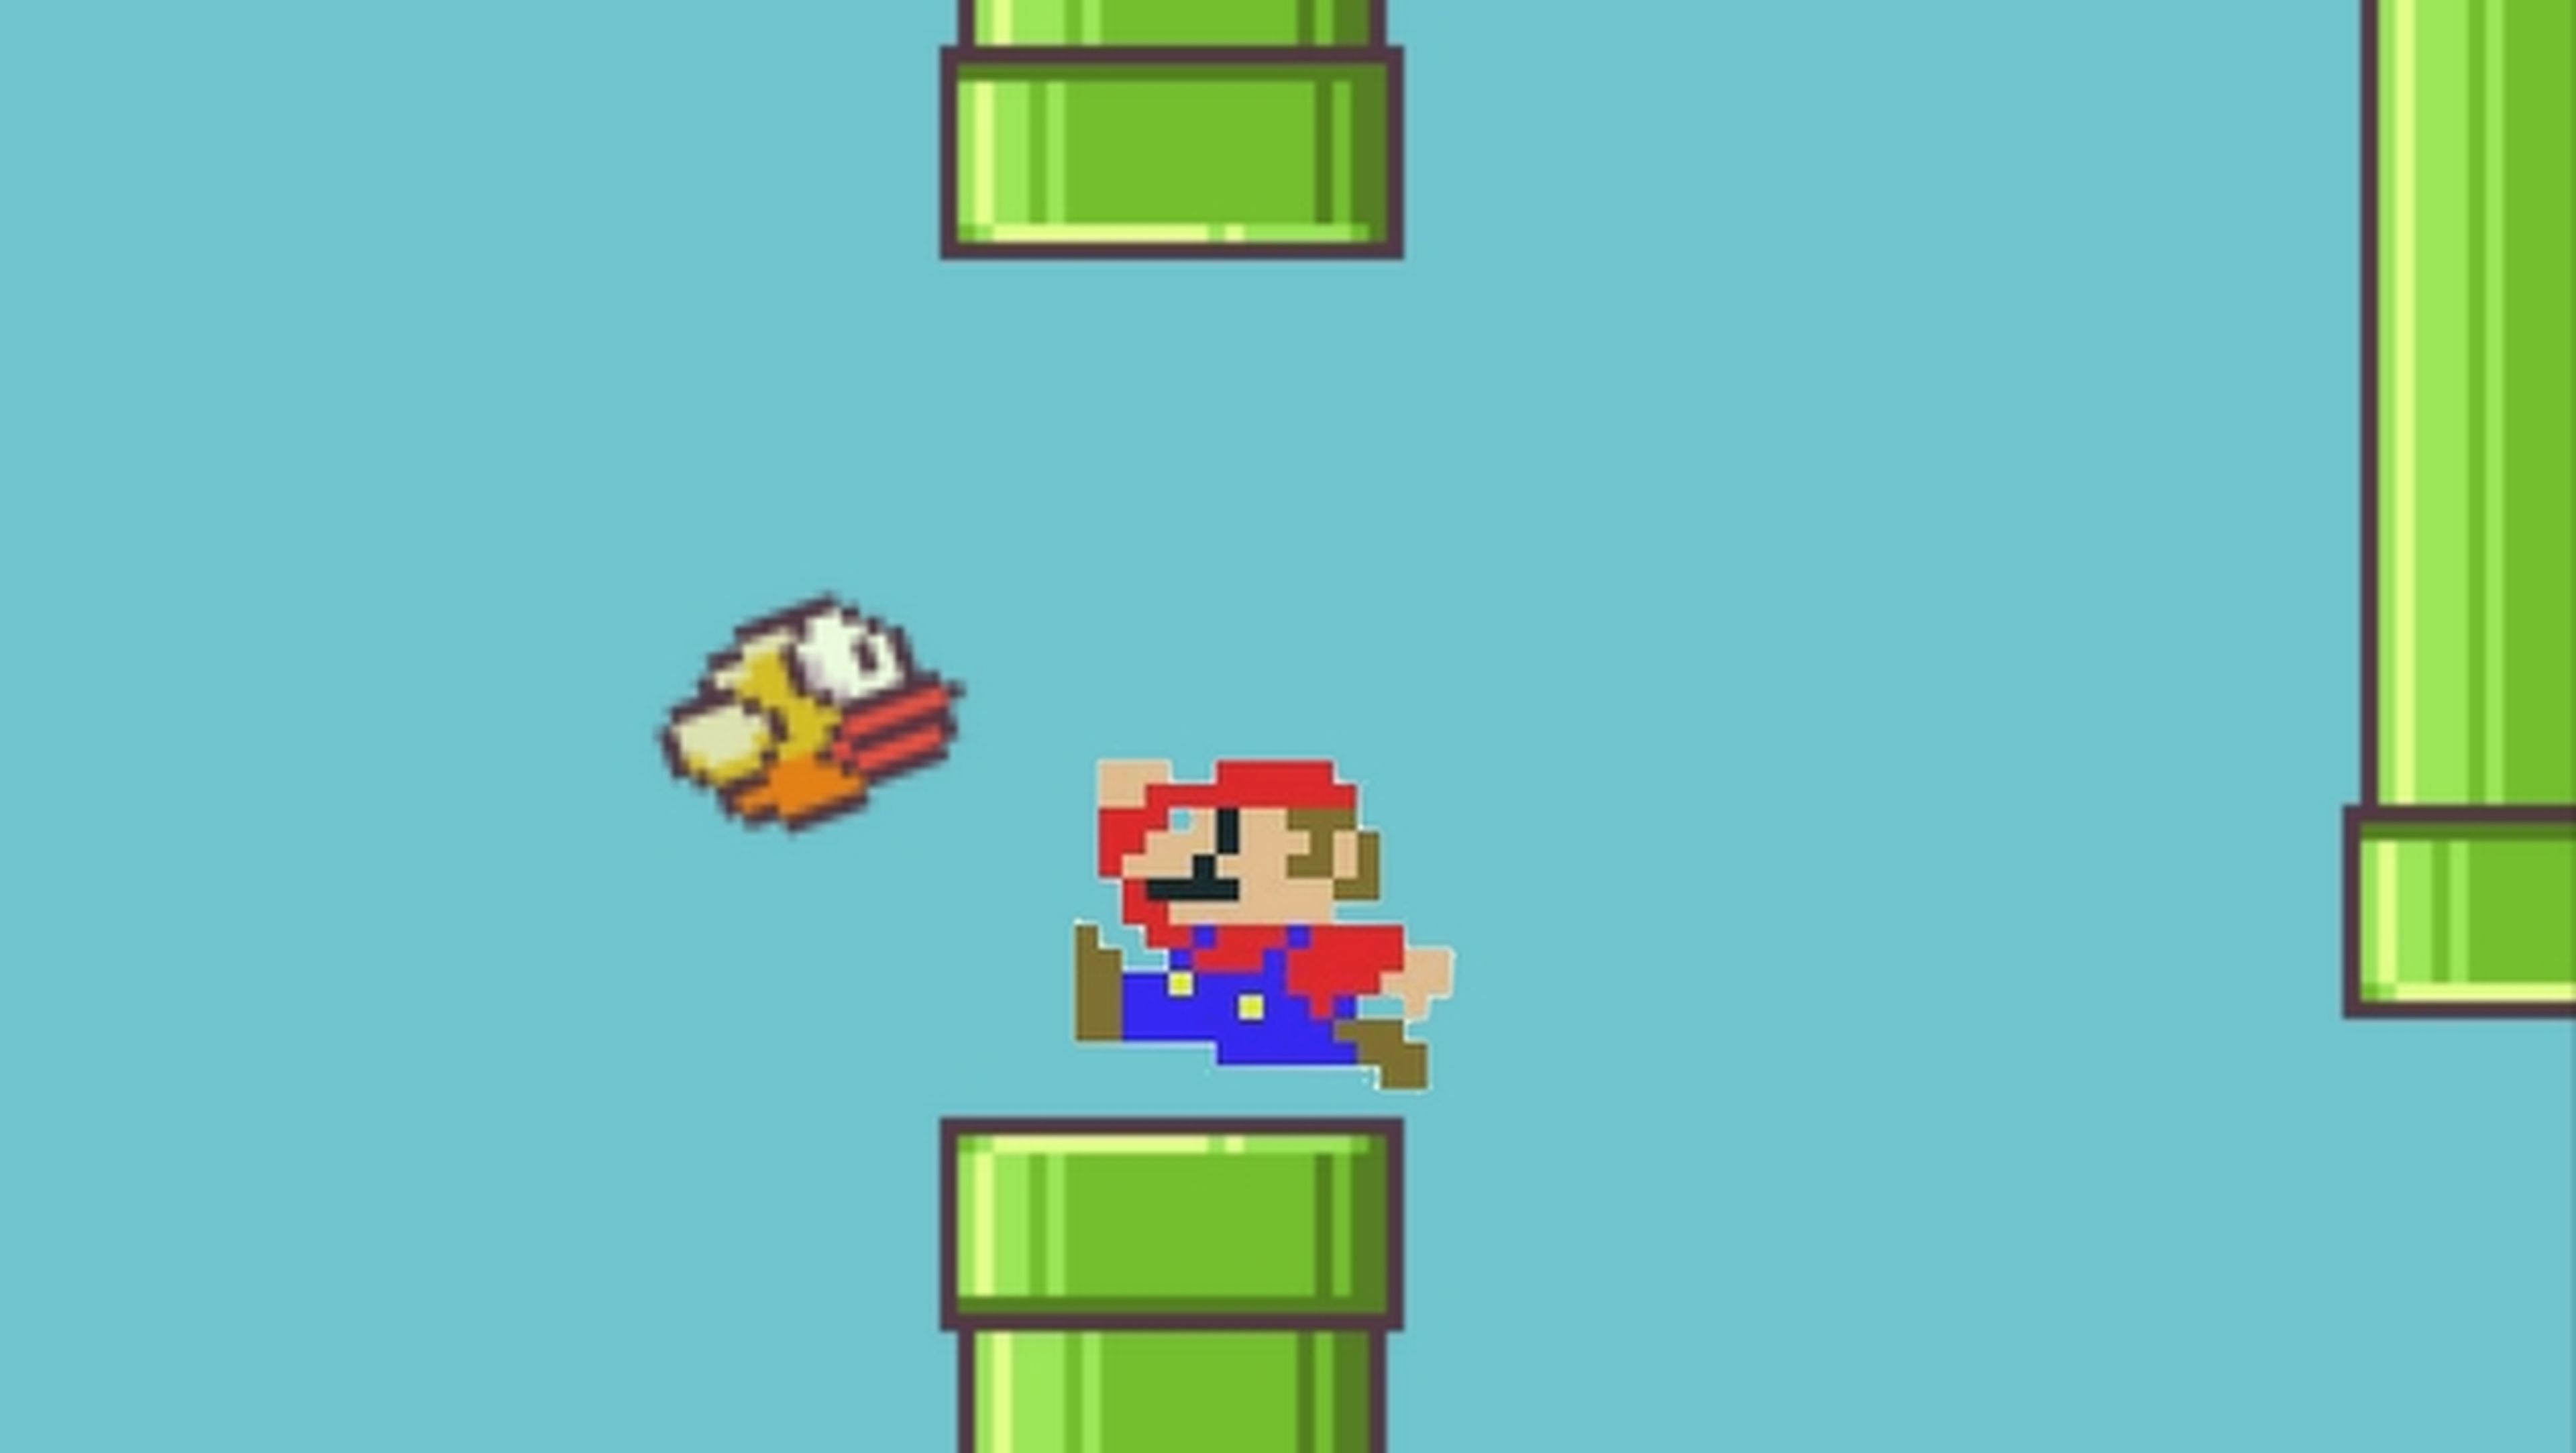 Rumores afirman que Flappy Bird ha sido retirado por una denuncia de Nintendo, basada en el diseño del juego. Las tuberías y el estilo gráfico están plagiados de los juegos de Mario.